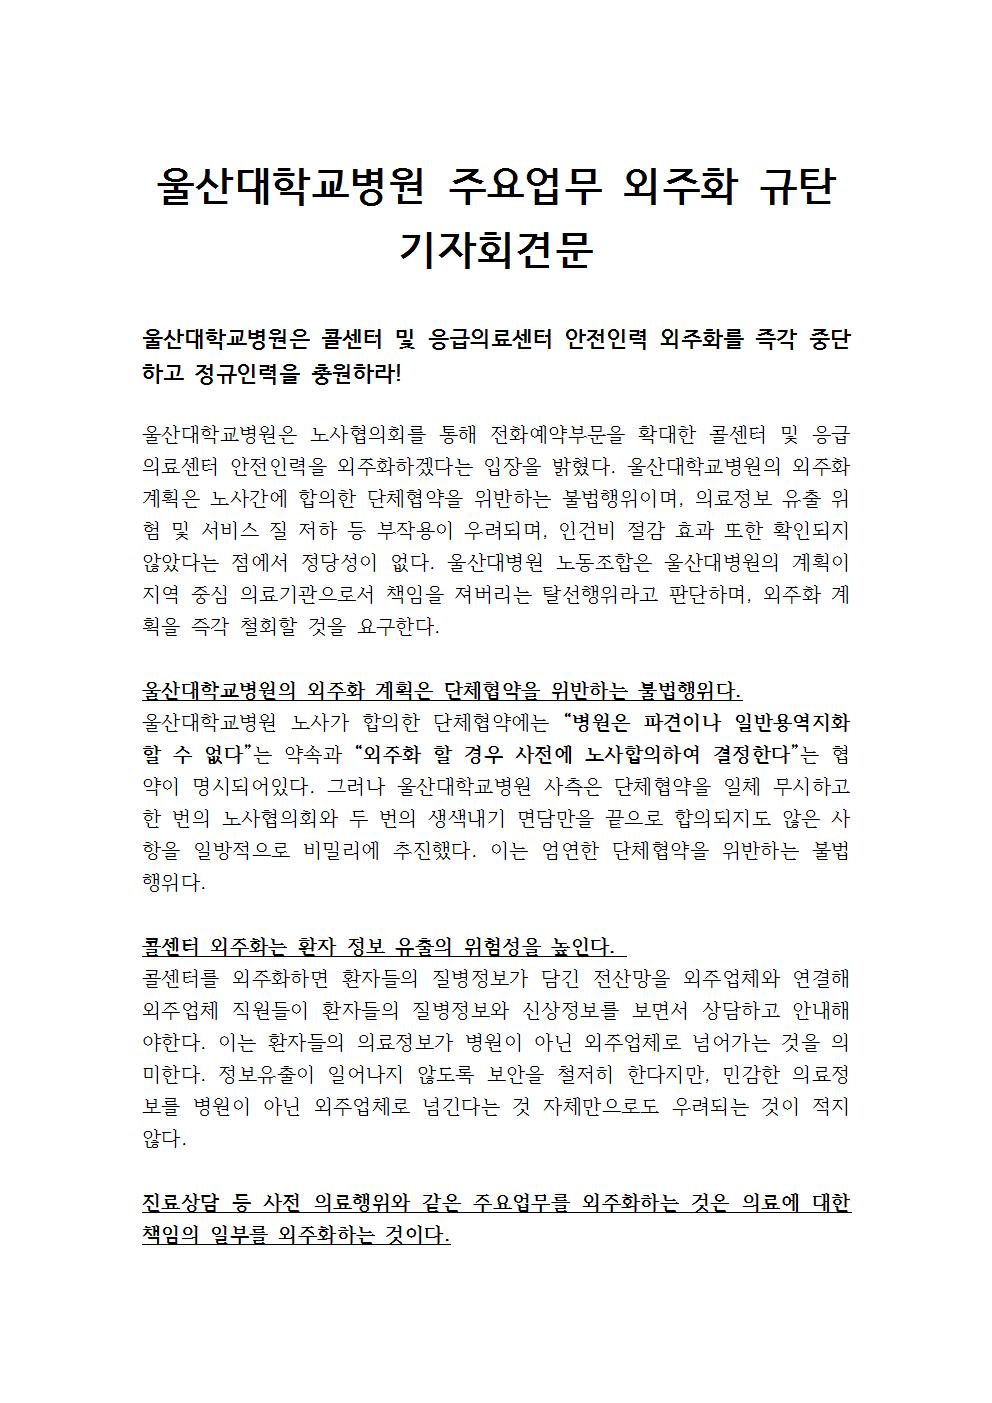 울산대학교병원 주요업무 외주화 규탄 기자회견문001.jpg